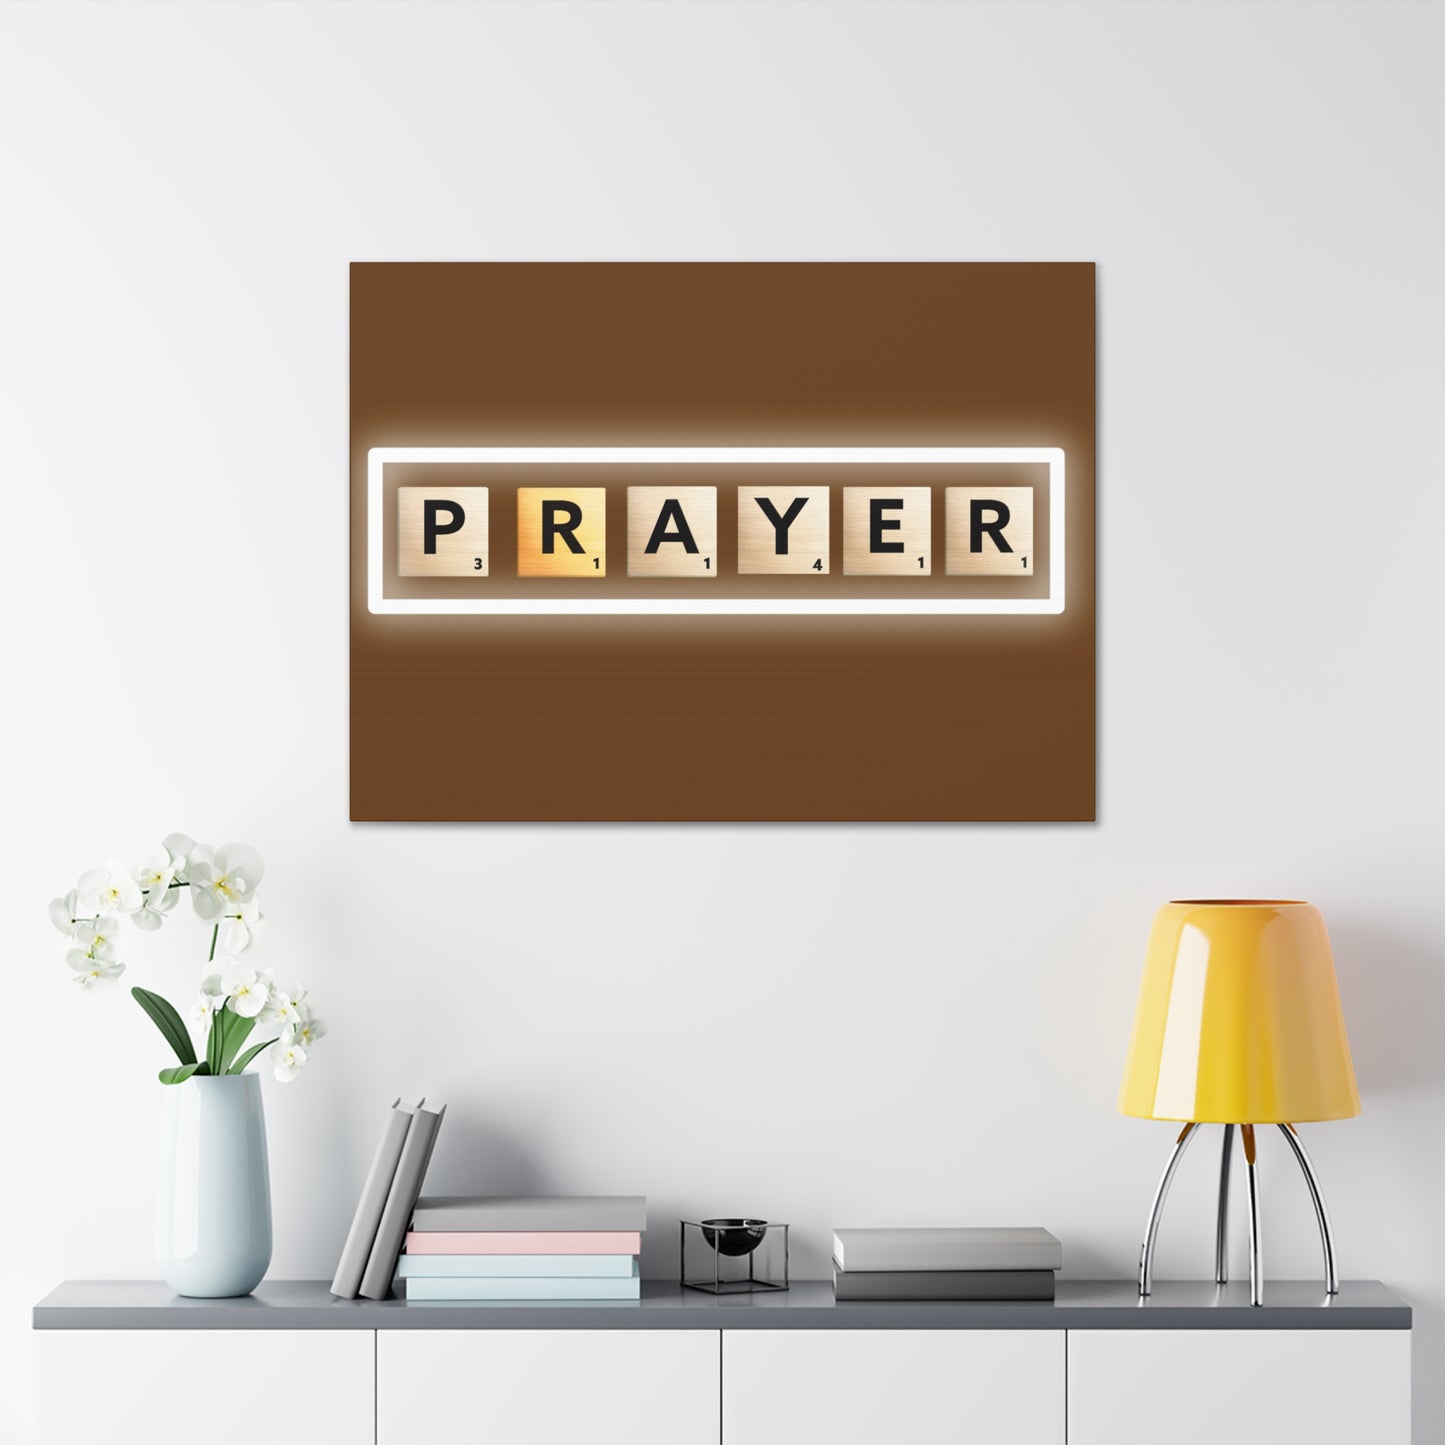 Arte cristiano de la pared: Oración (marco de madera listo para colgar)